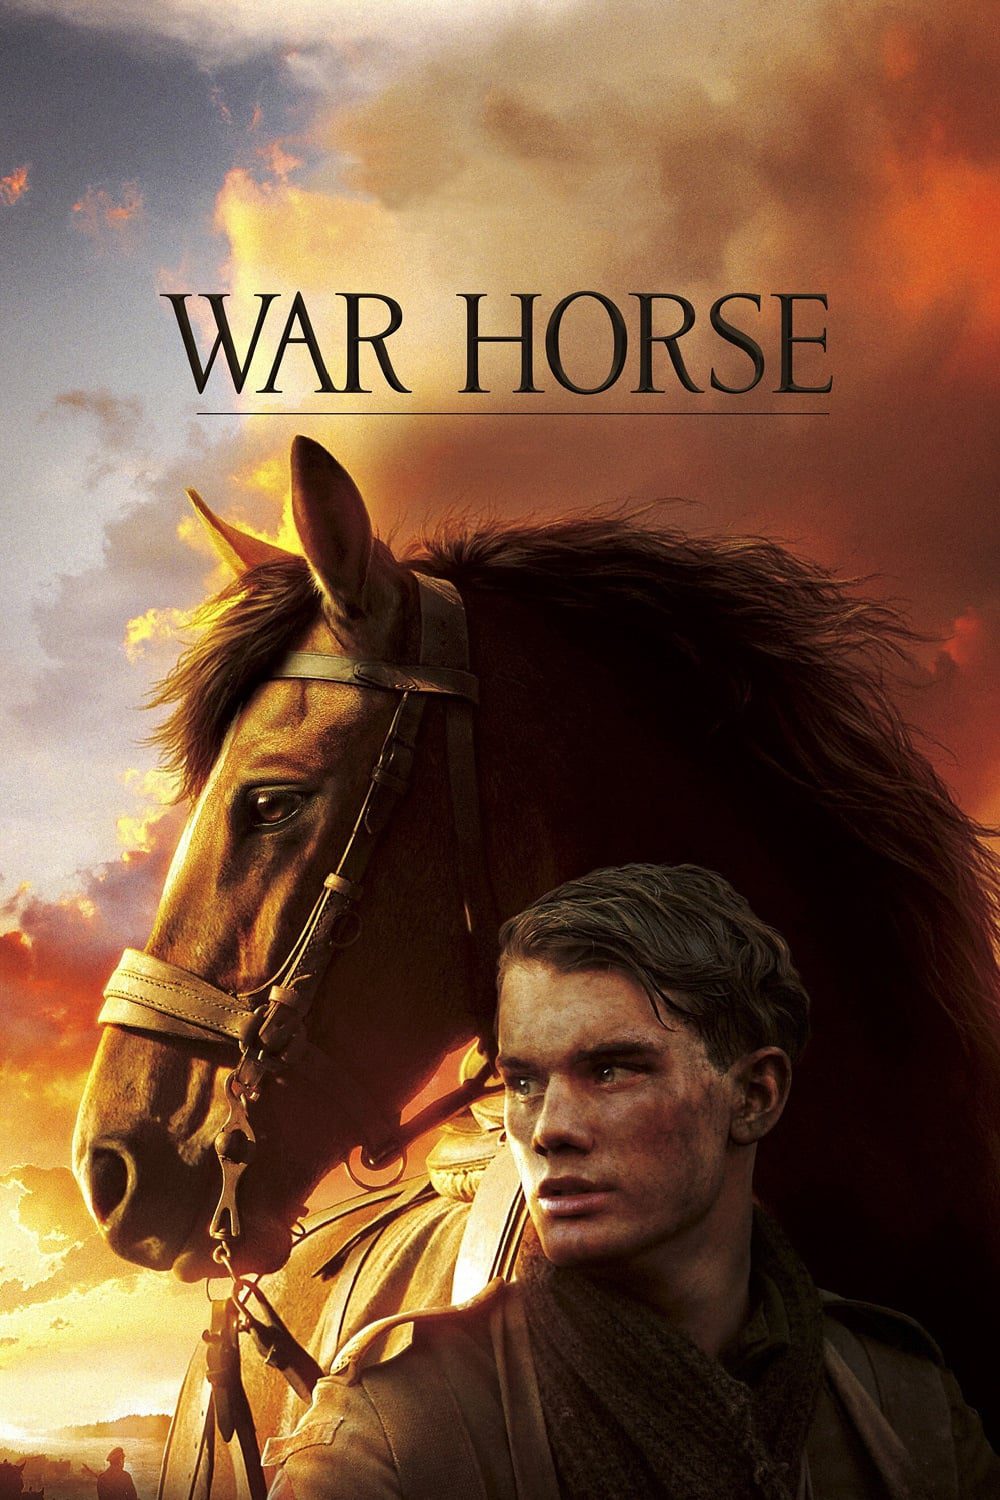 ดูหนังออนไลน์ฟรี War Horse ม้าศึกจารึกโลก